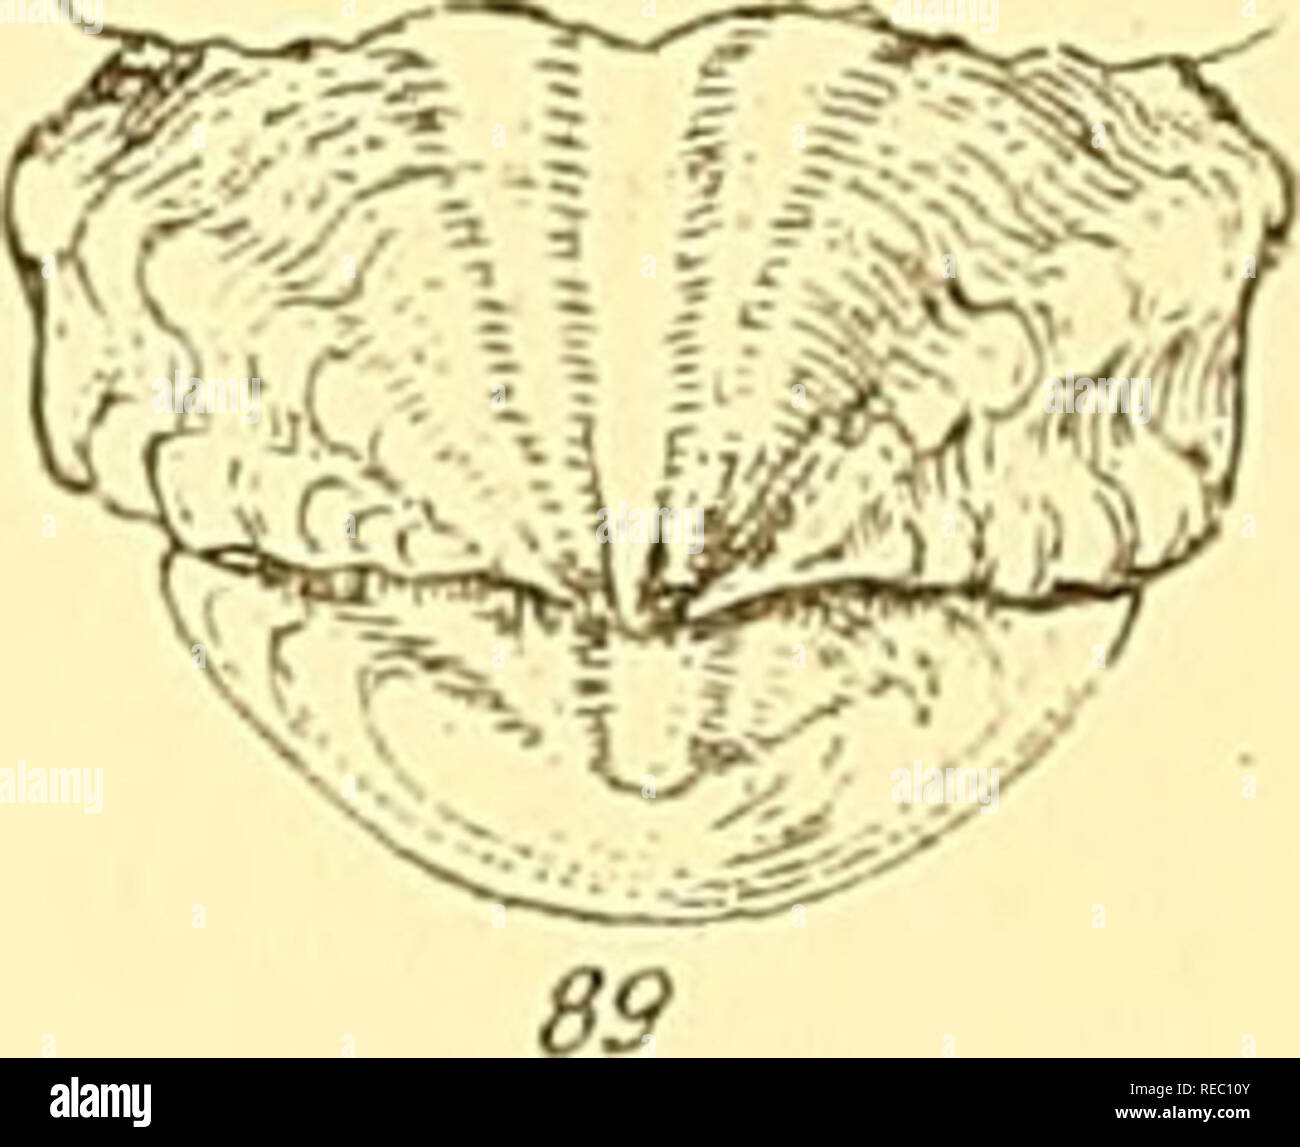 . Conchologia iconica, o illustrazioni dei gusci di molluscous animali. Molluschi; gusci; molluschi e conchiglie. . Si prega di notare che queste immagini vengono estratte dalla pagina sottoposta a scansione di immagini che possono essere state migliorate digitalmente per la leggibilità - Colorazione e aspetto di queste illustrazioni potrebbero non perfettamente assomigliano al lavoro originale. Reeve, Lovell, 1814-1865; Sowerby, G. B. (George Brettingham), 1812-1884. Londra : Reeve, fratelli Foto Stock